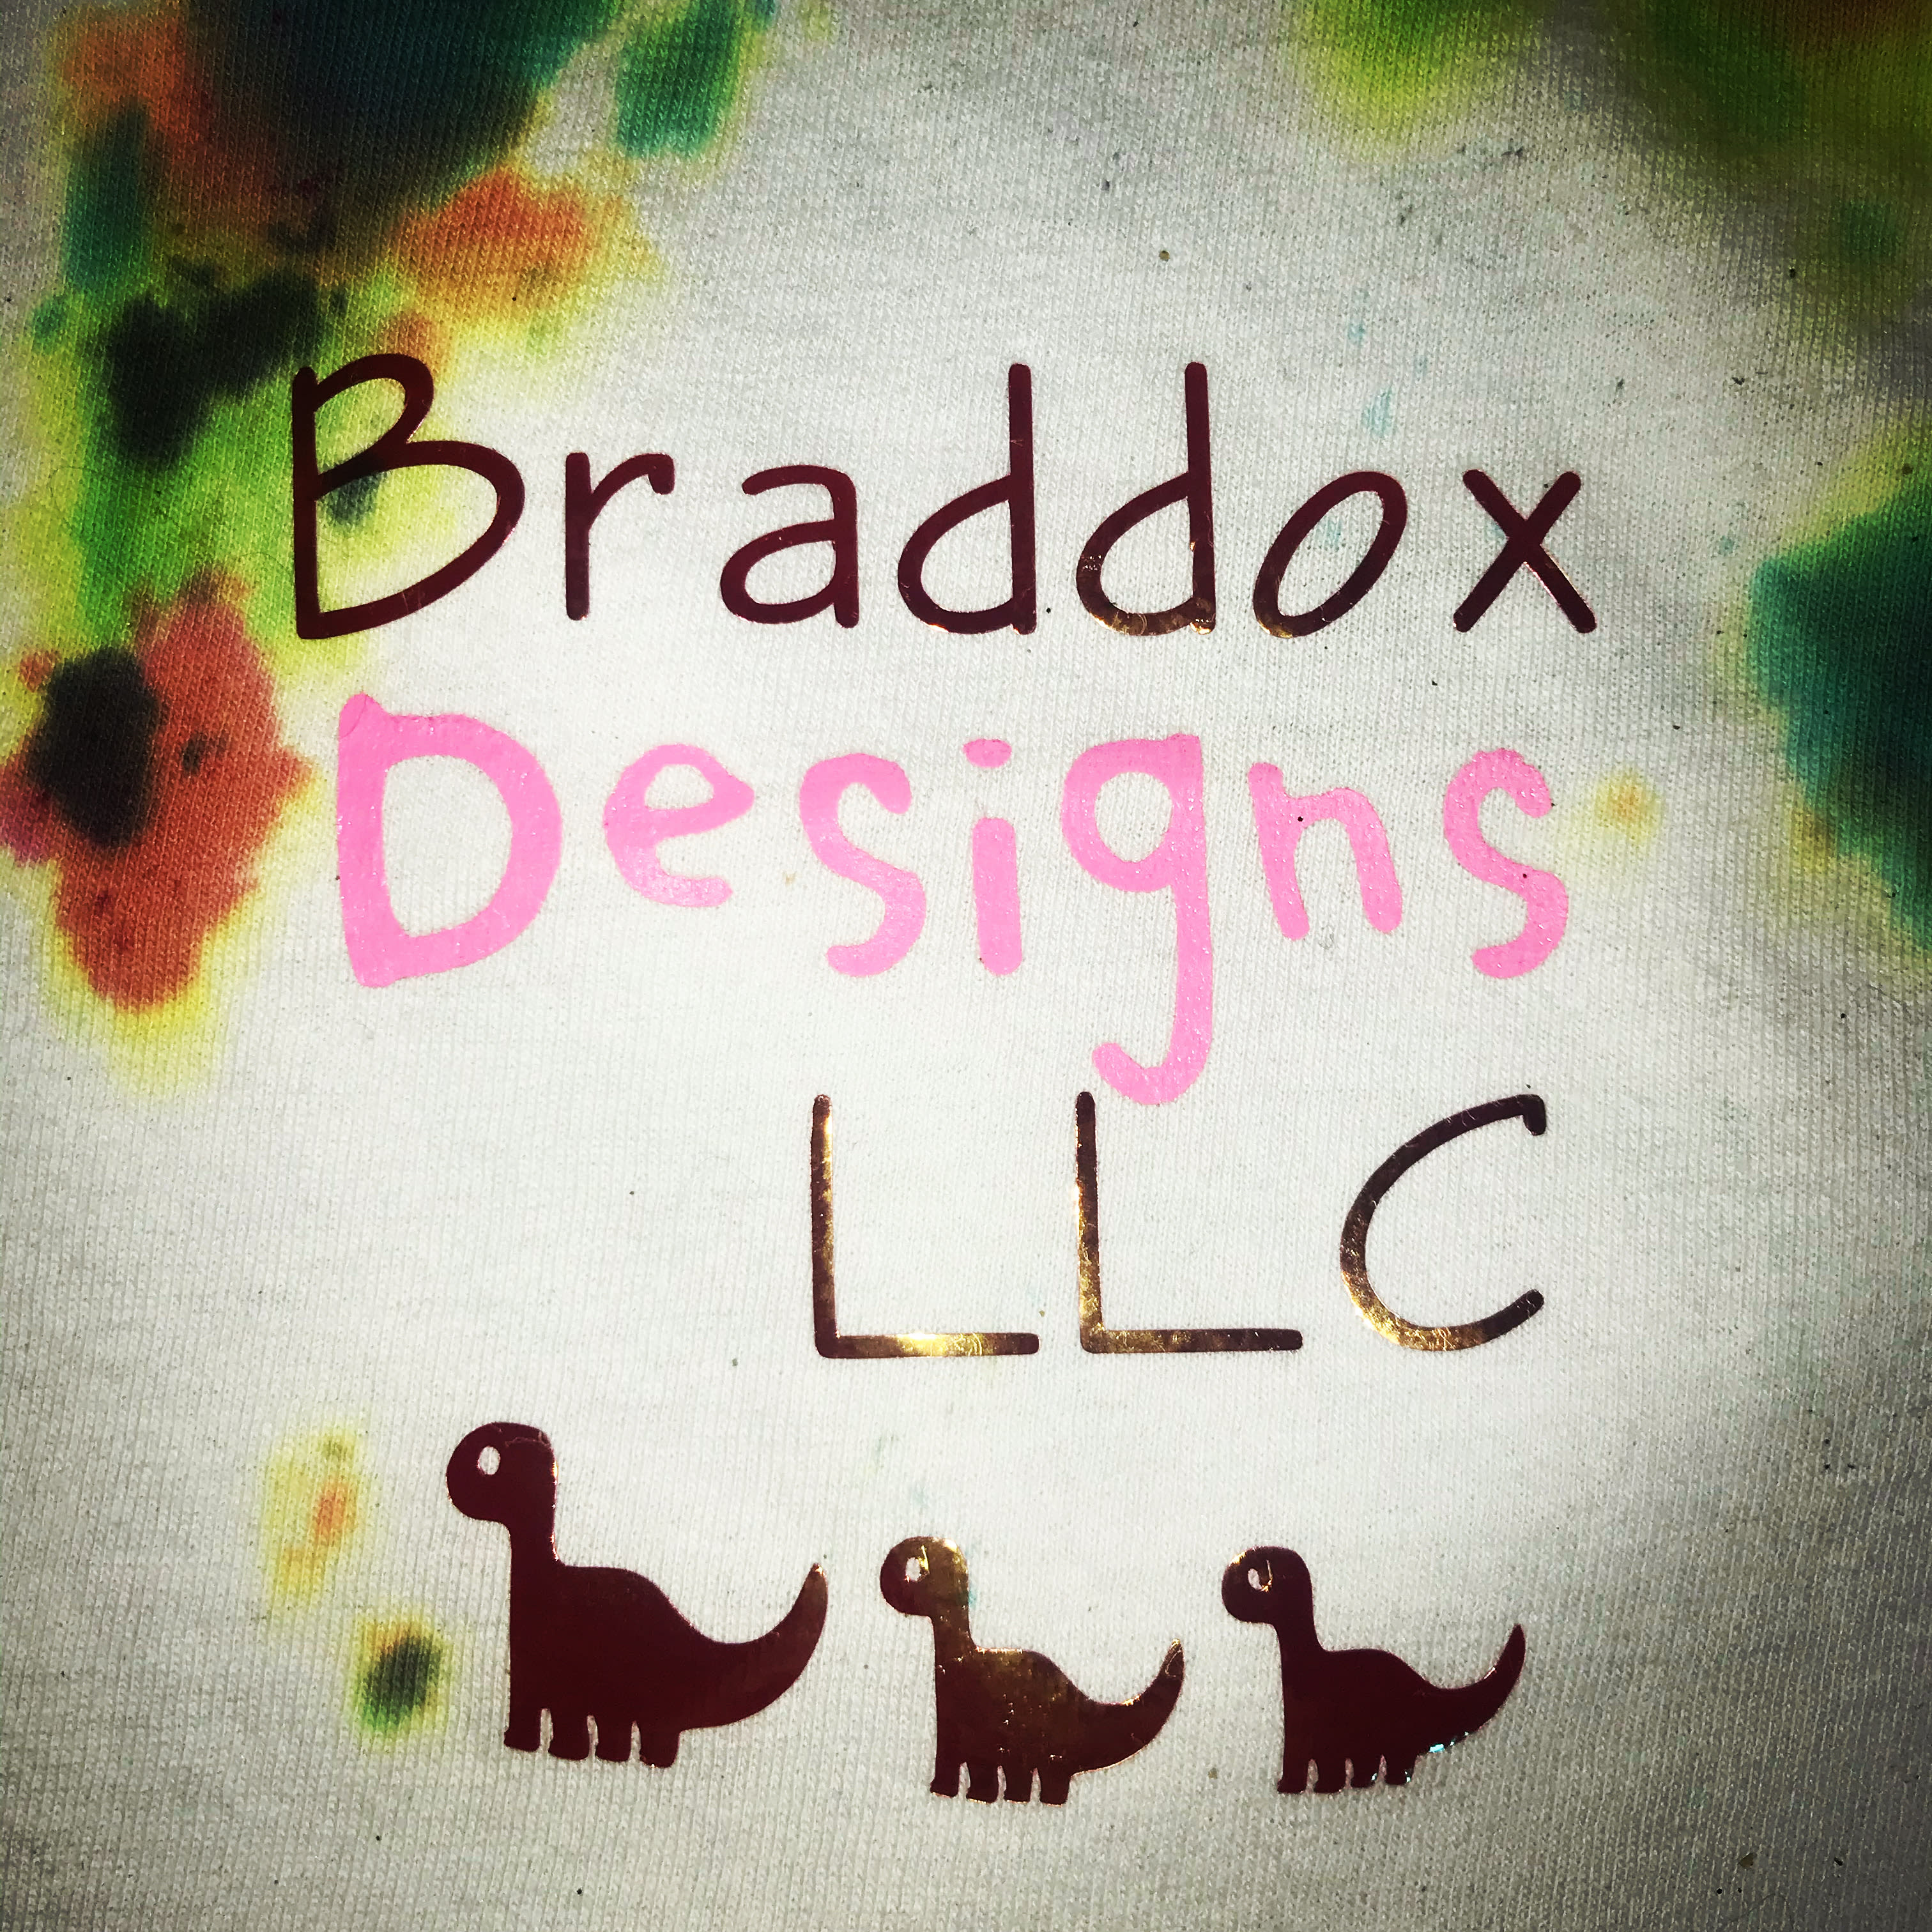 Braddox Designs LLC